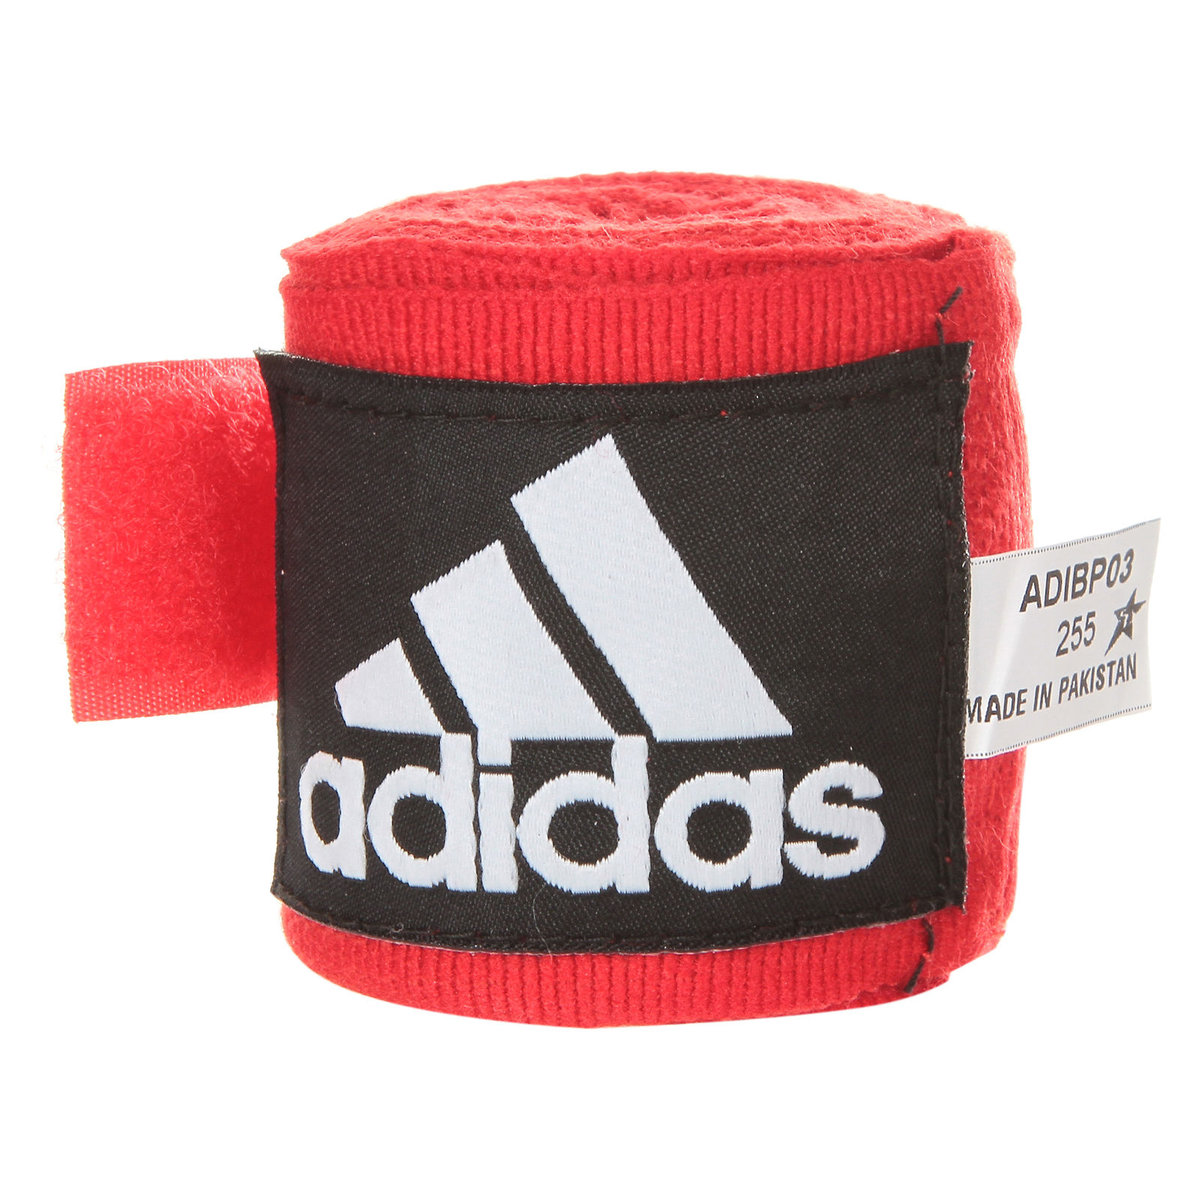 Фото - Захист для єдиноборств Adidas , Taśma bokserska, ADIBP03, czerwony, 255x5cm 